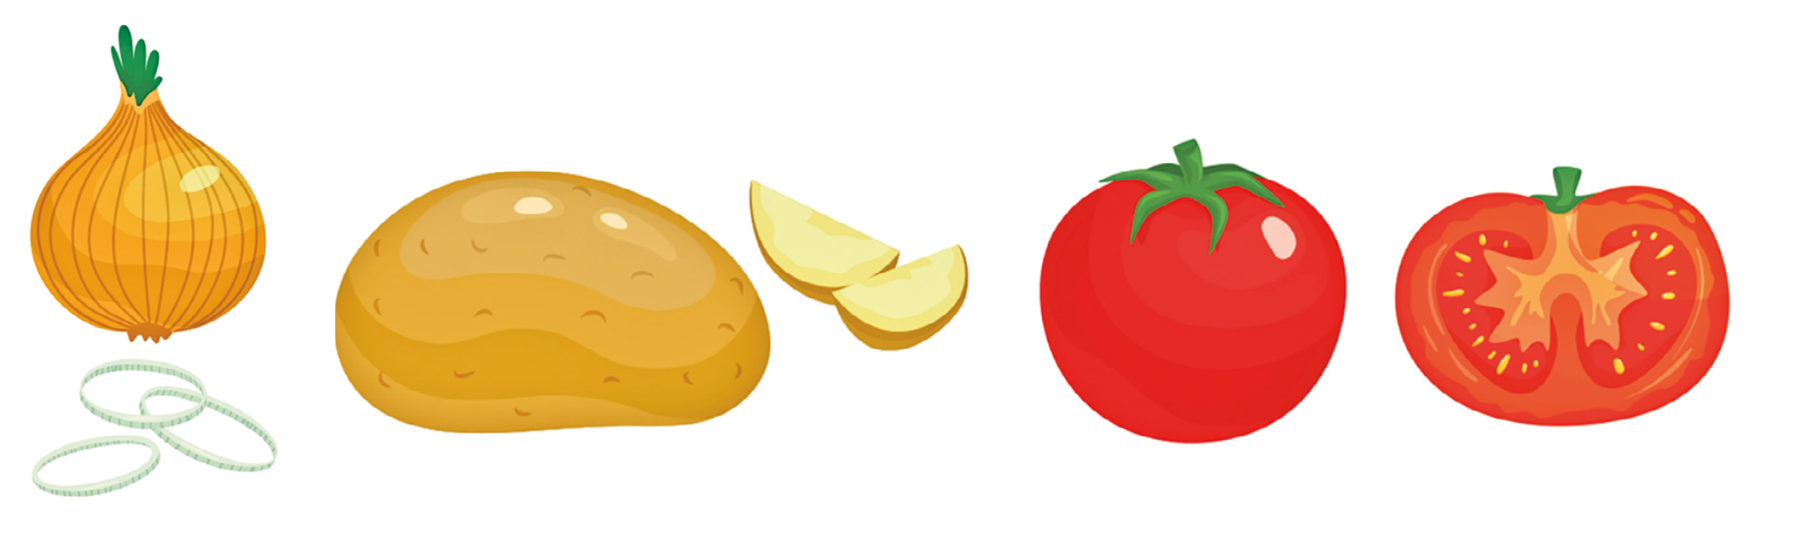 Ilustração. Uma cebola com a casca perto de três rodelas de cebola. Mais abaixo, uma batata com casca perto de duas fatias de batata. Na parte inferior, um tomate inteiro perto de um tomate cortado ao meio mostrando suas sementes.